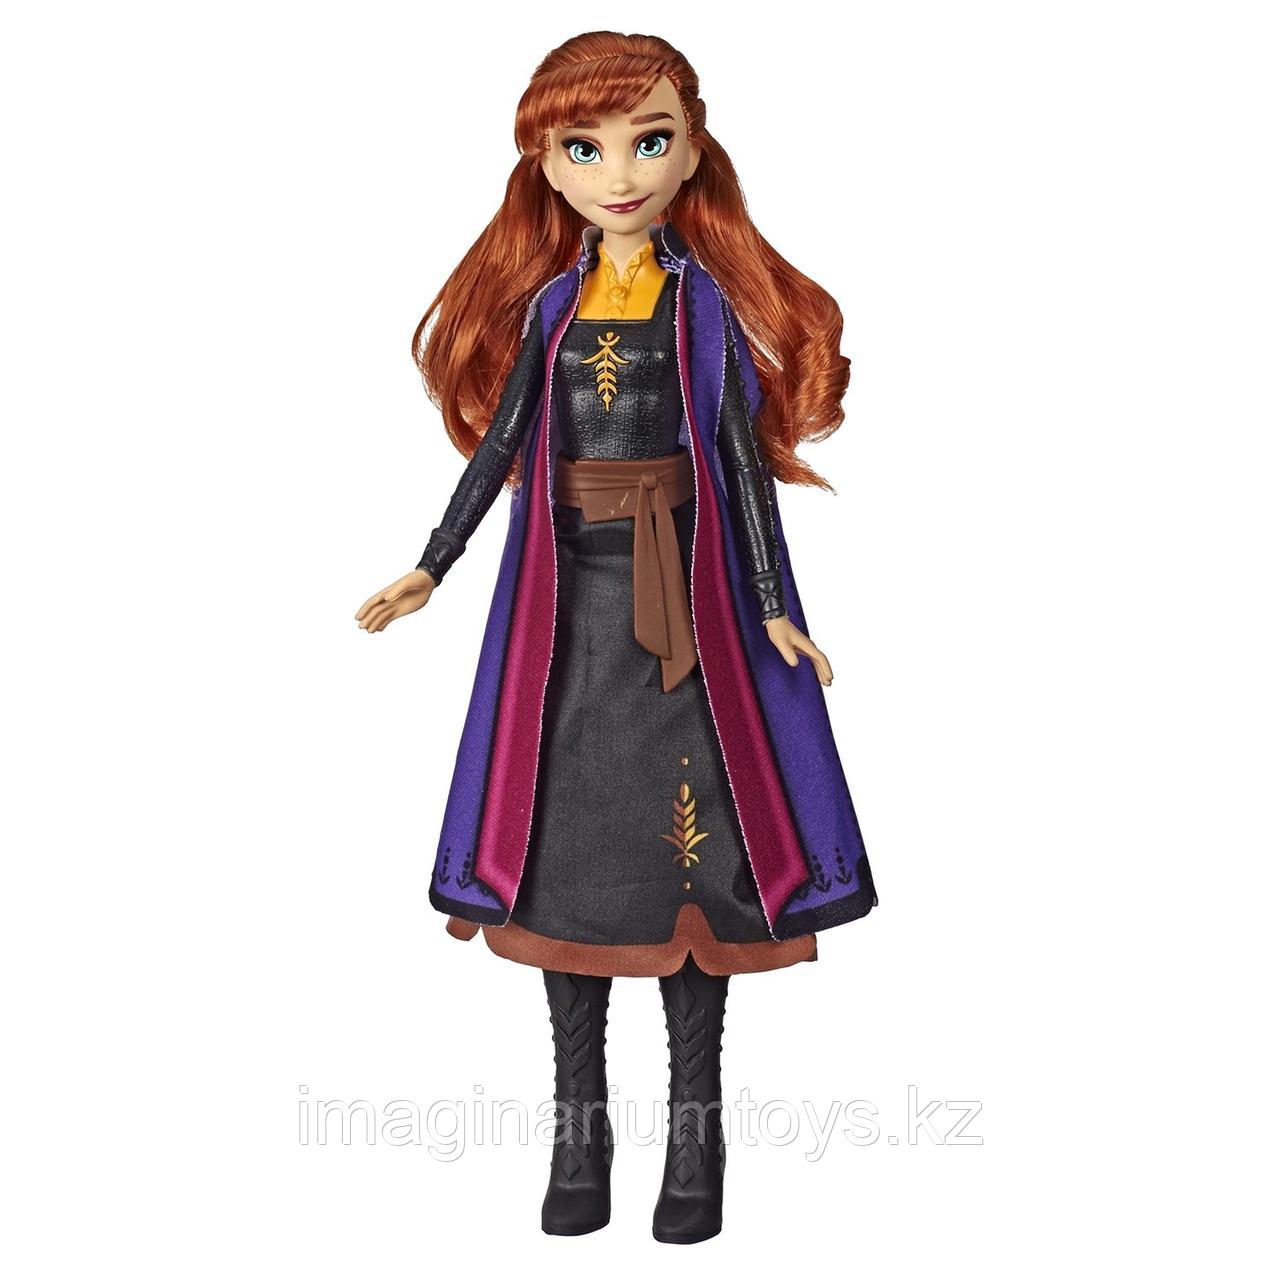 Кукла Анна со сверкающим платьем Frozen 2 Hasbro, фото 1